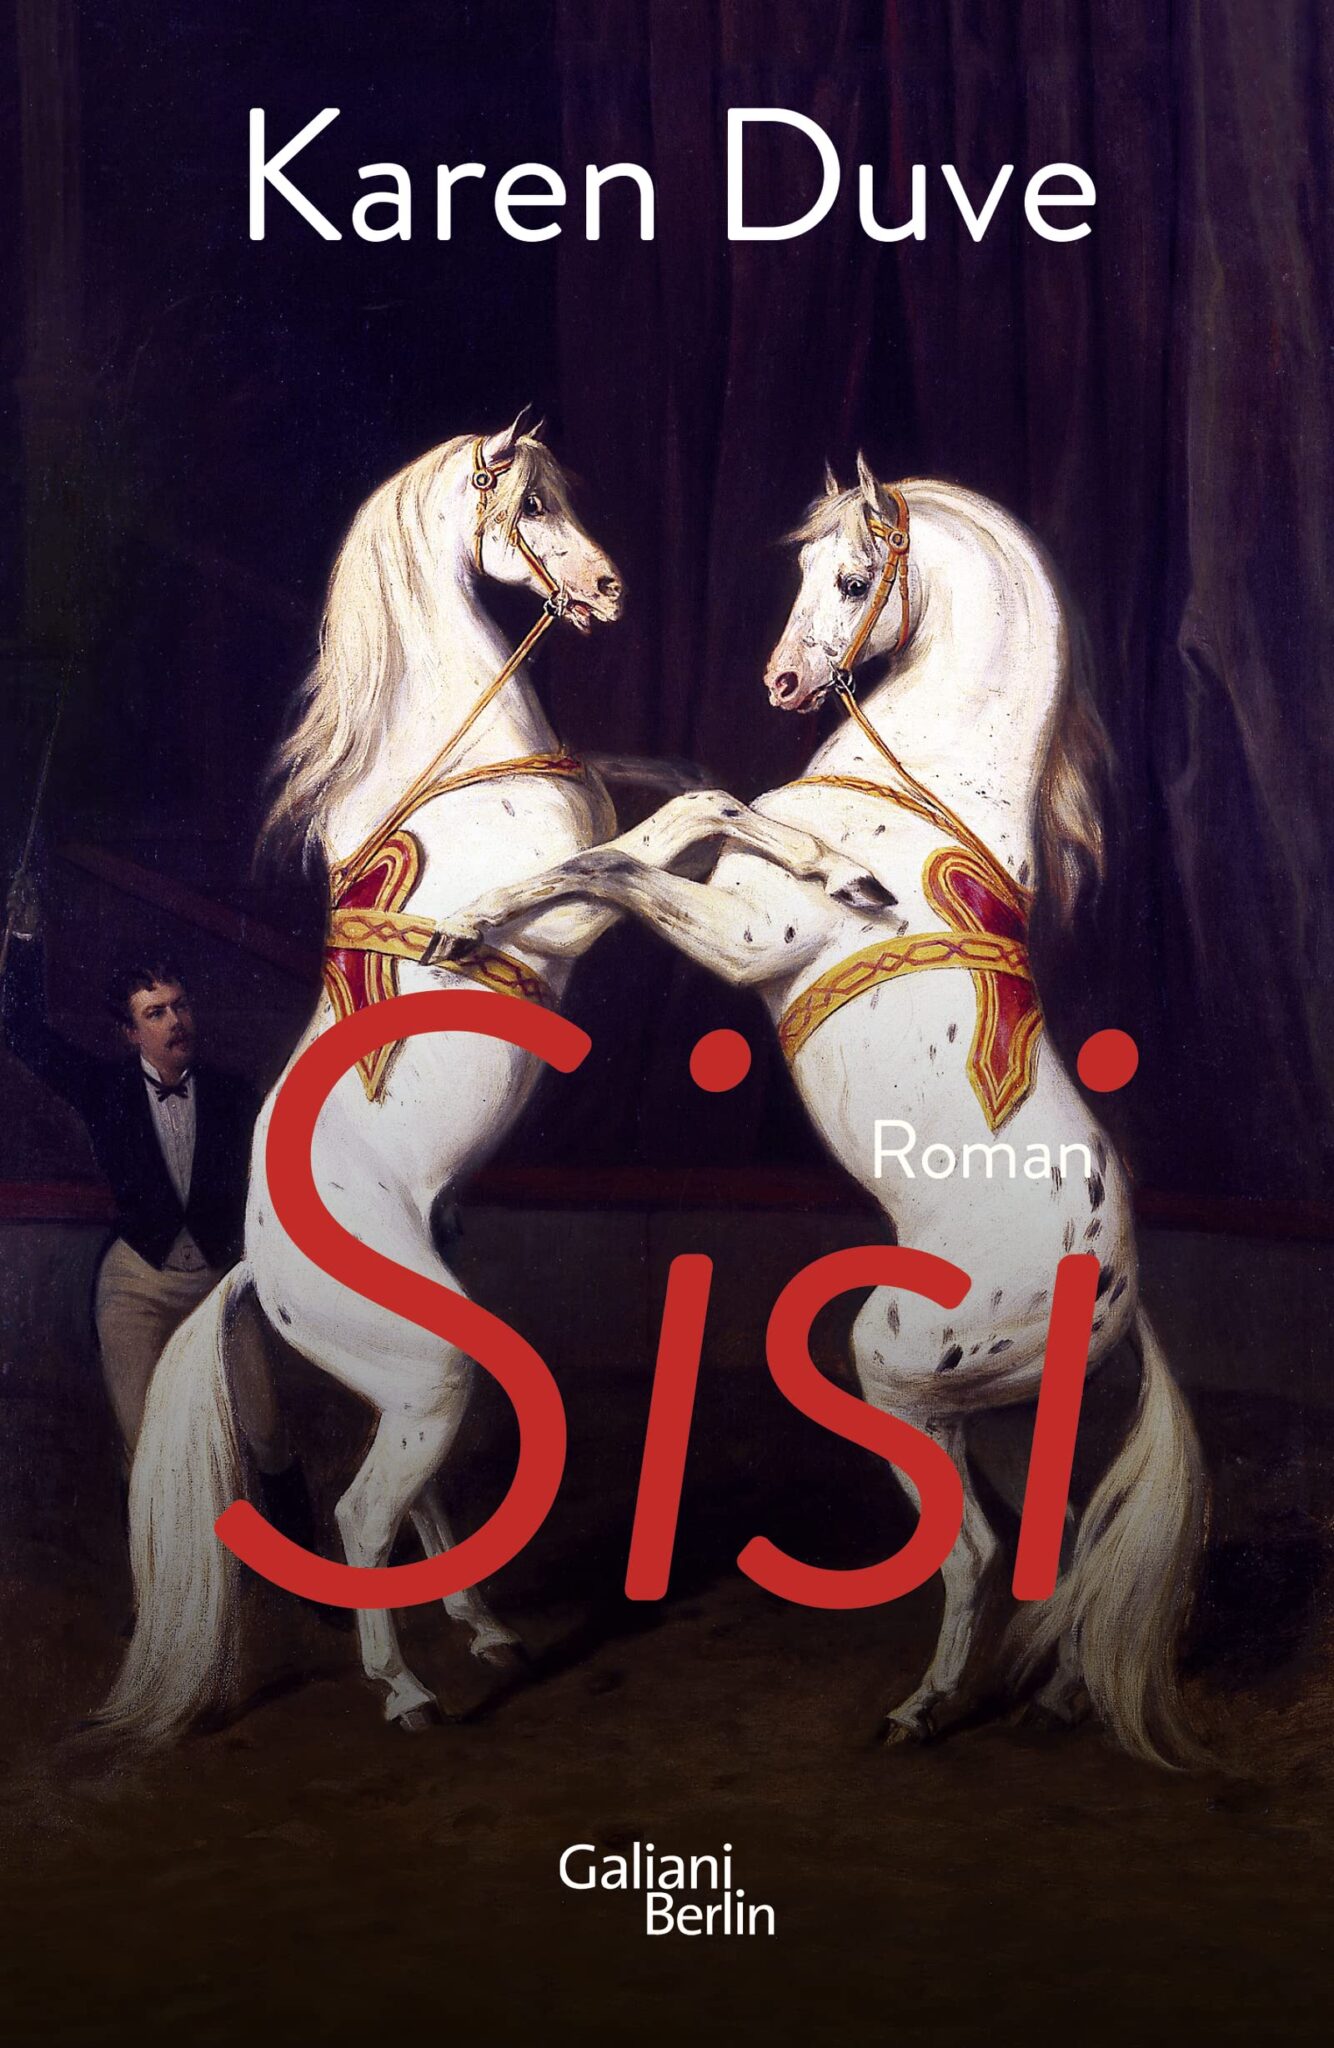 #
					„Sisi“ von Karen Duve: Dieser Kaiserin neue Kleider